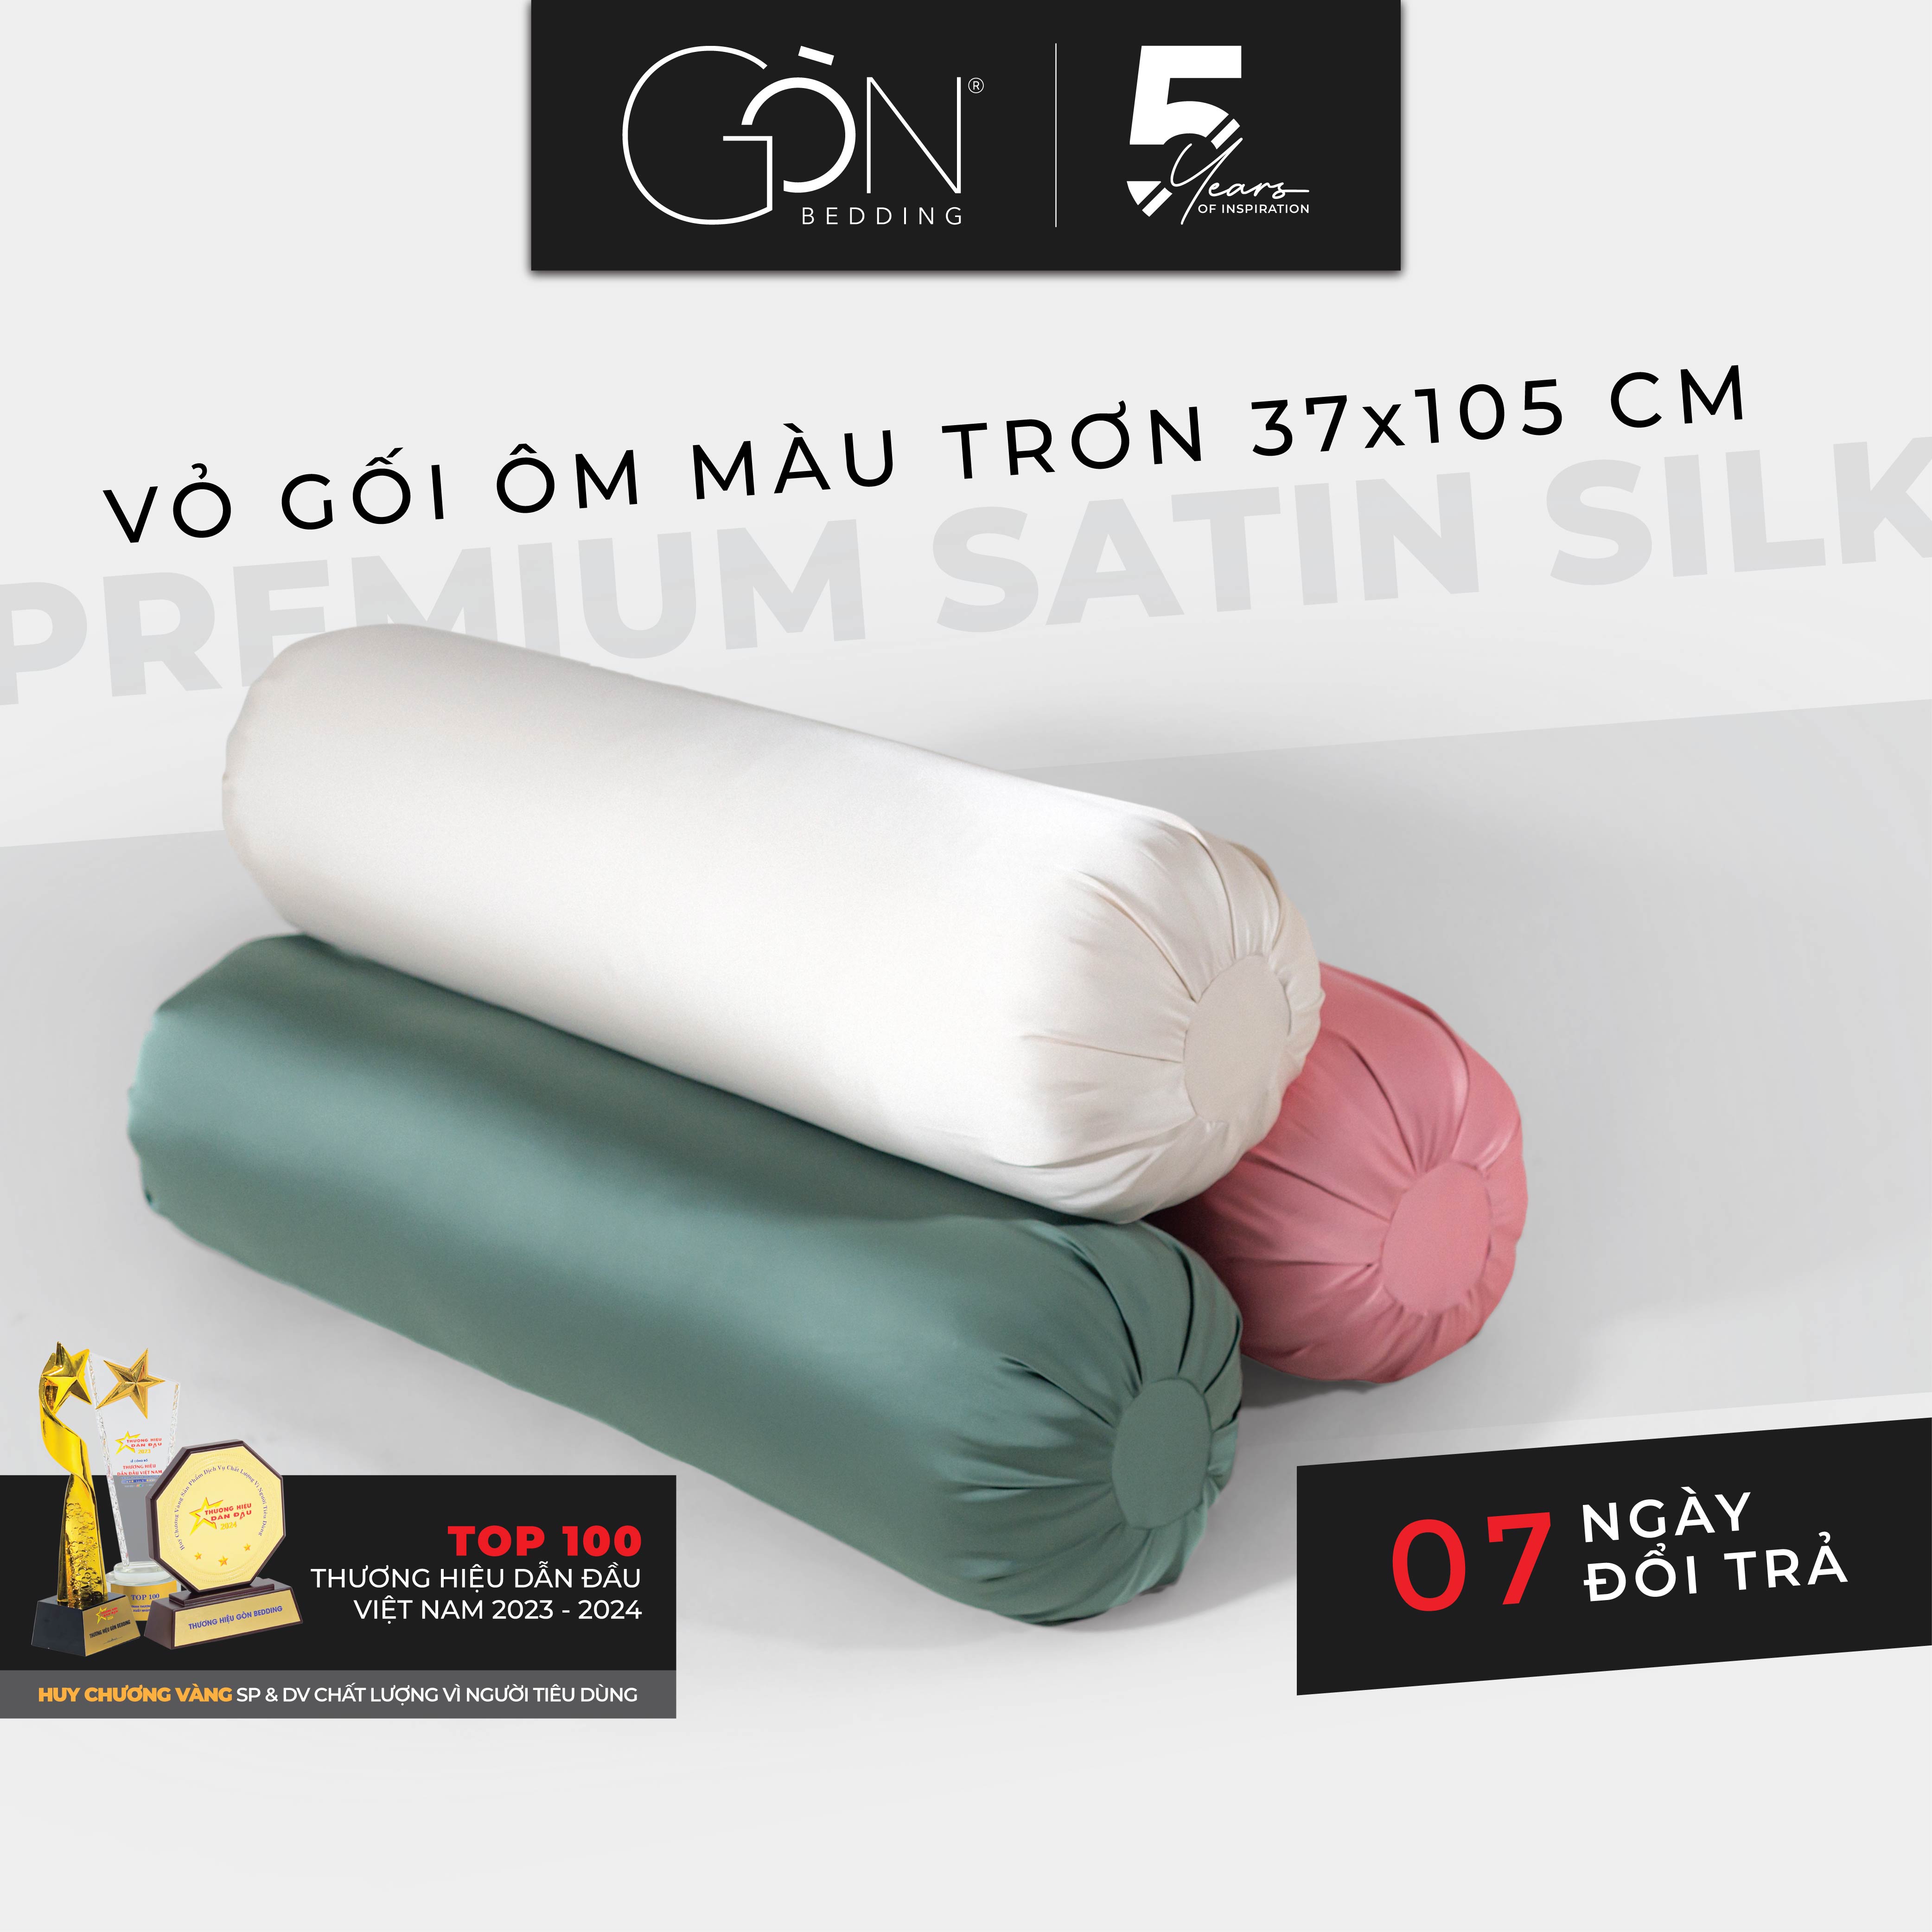 01 Vỏ Gối Ôm Gòn Bedding Lụa Satin Premium Cao Cấp Màu Trơn 35x100 cm